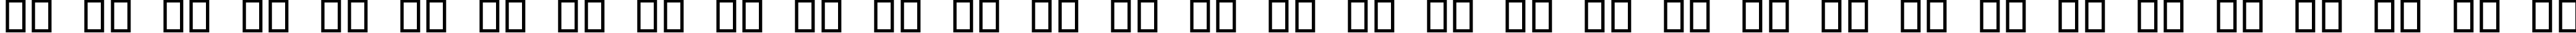 Пример написания русского алфавита шрифтом Digital dream Narrow